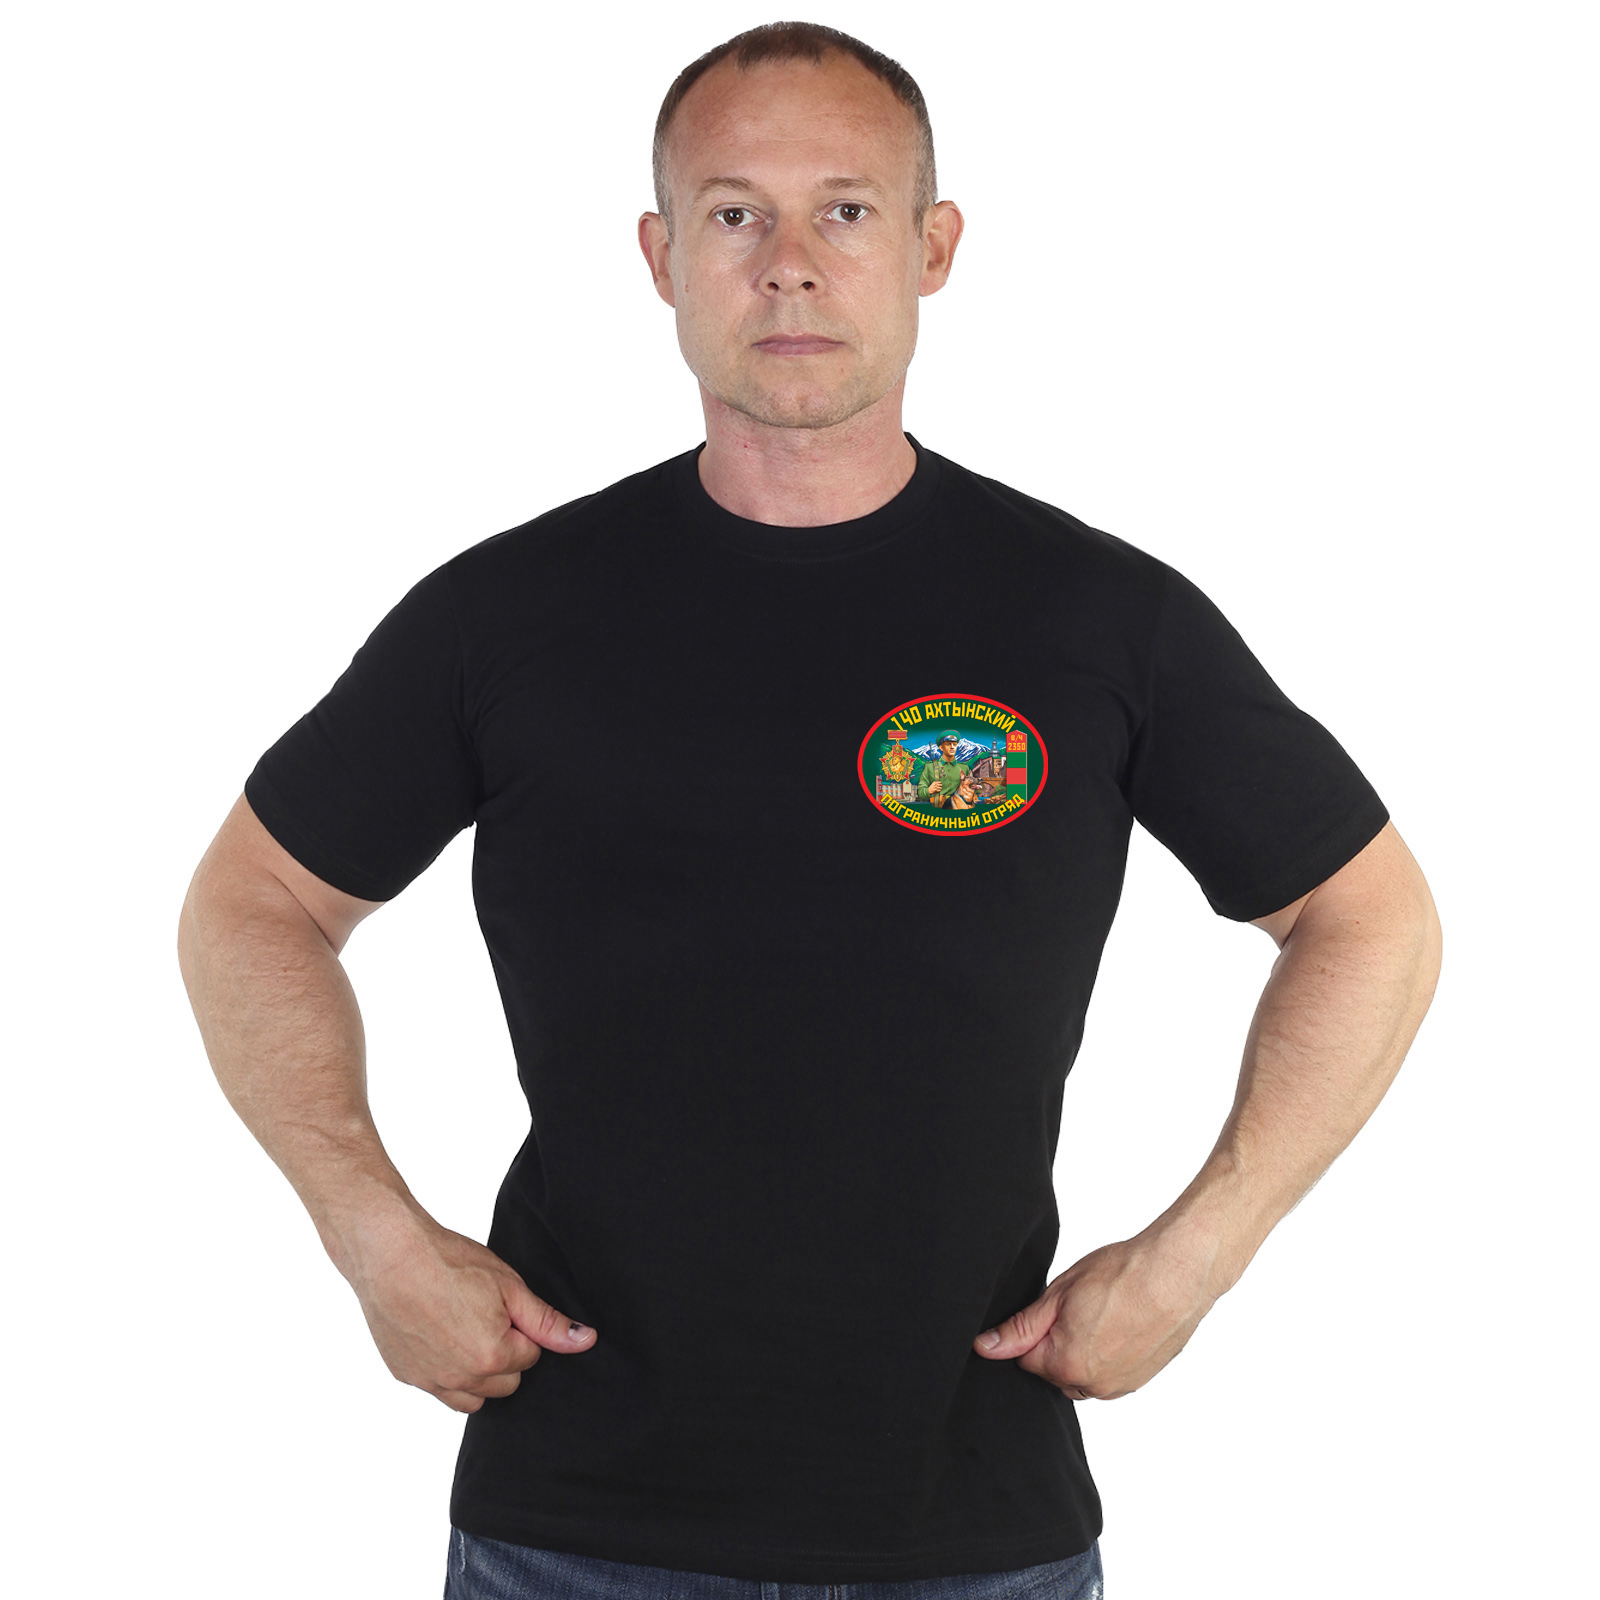 Купить в интернет магазине футболку 140 Ахтынский погранотряд